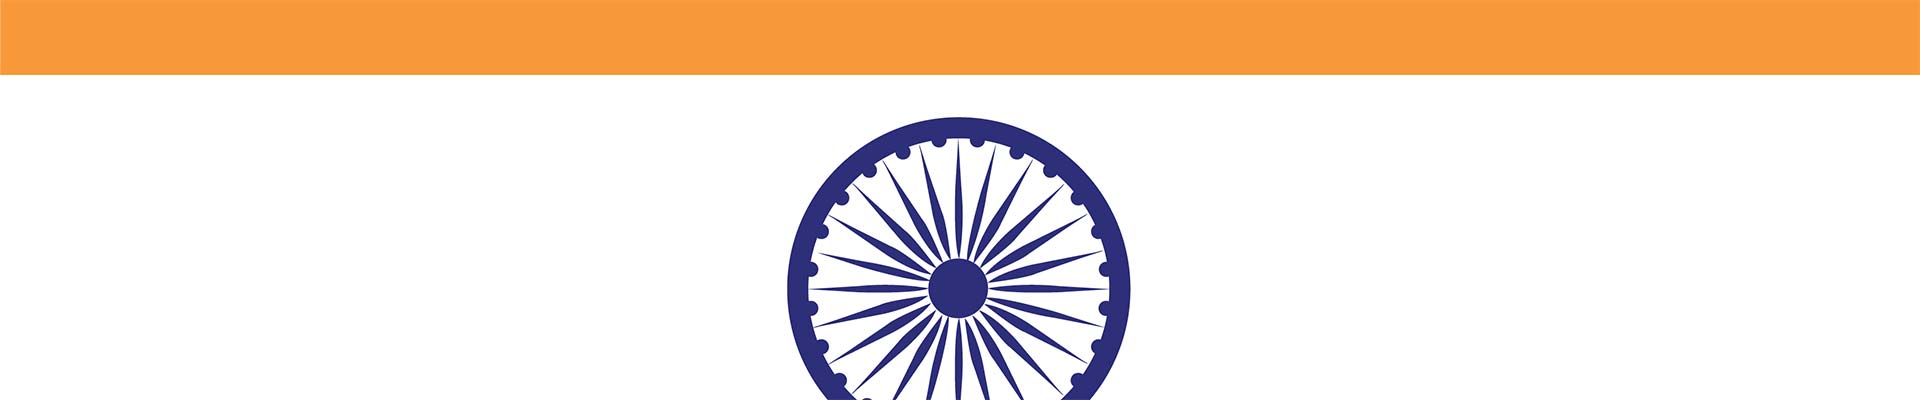 Um segmento da bandeira indiana